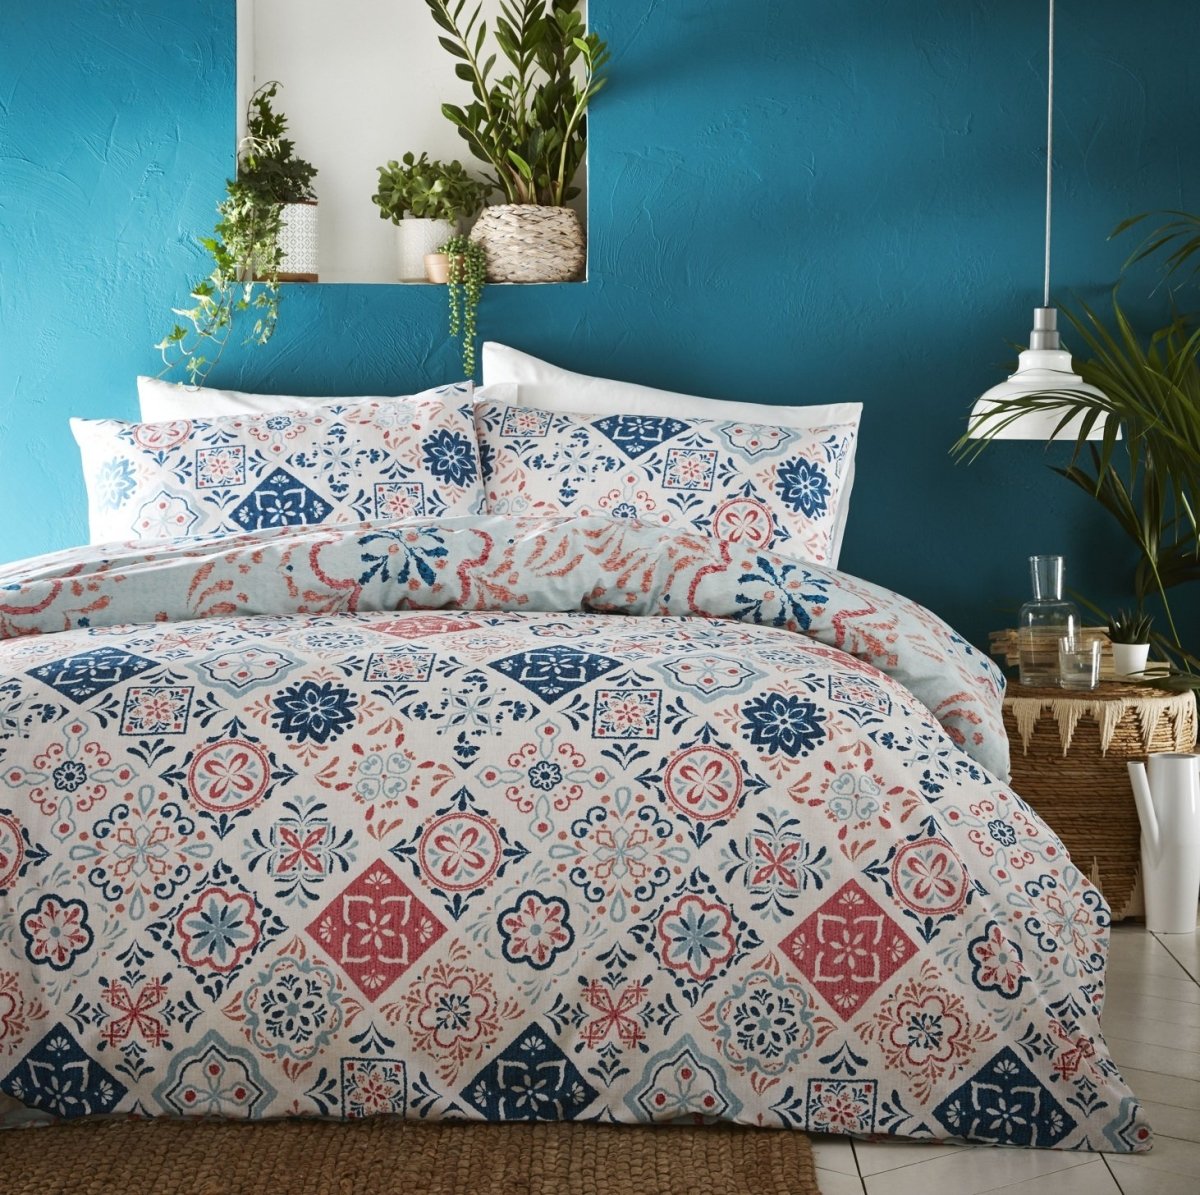 Morocco Double Duvet Cover Bedding Set - Teal & Terracotta - Bonnypack